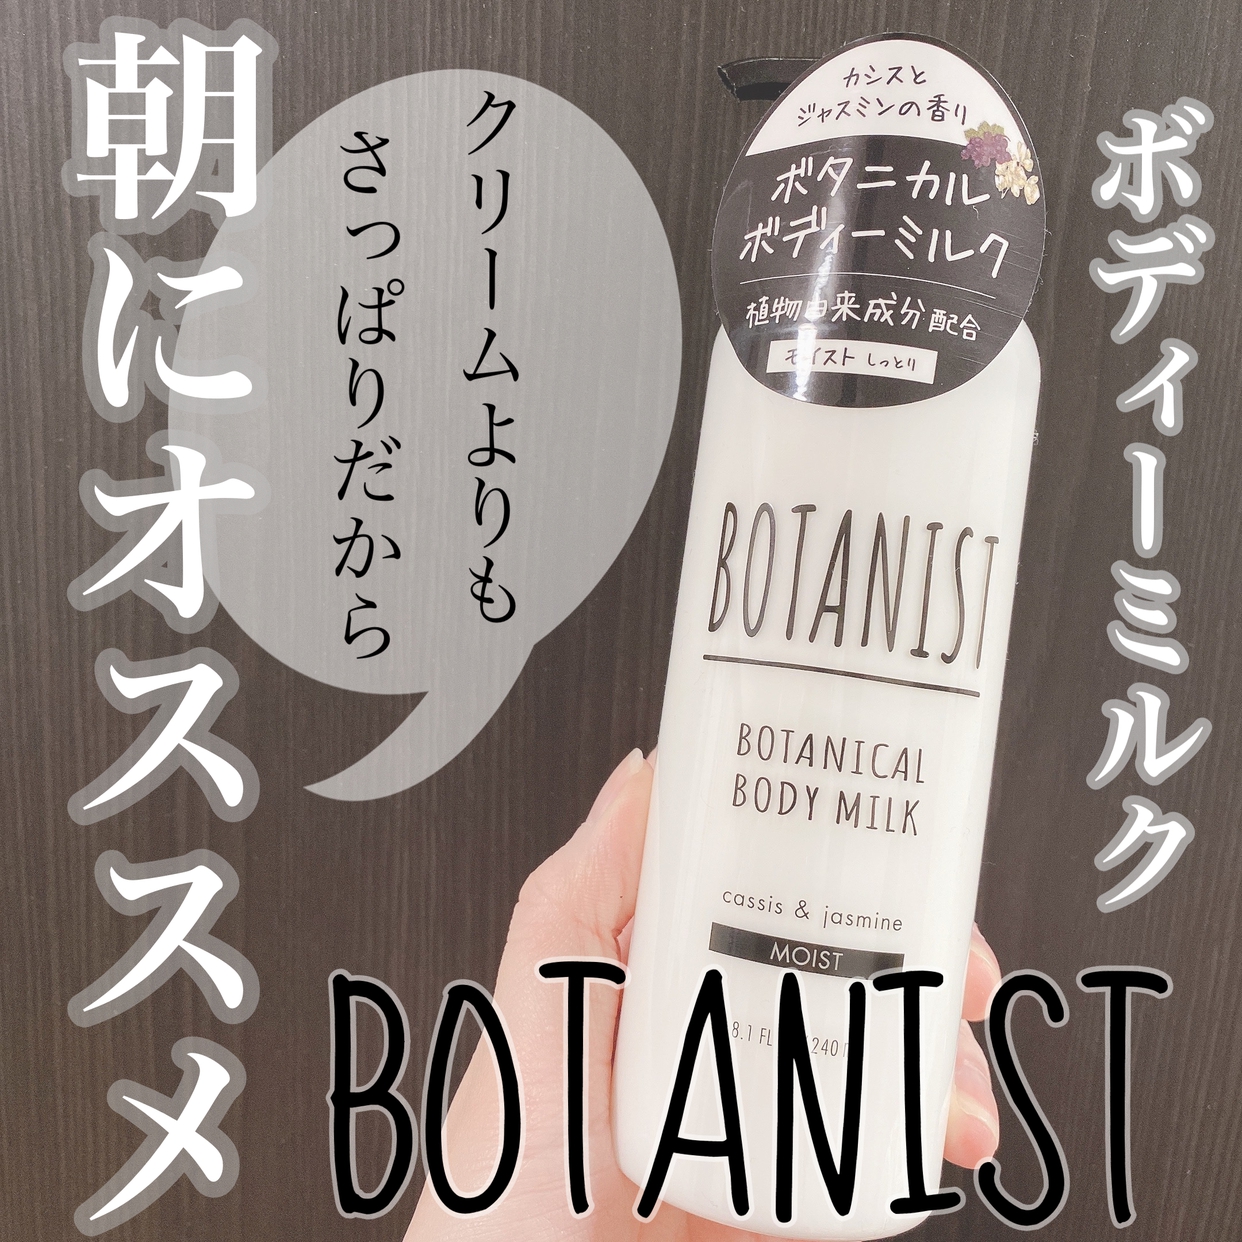 BOTANIST(ボタニスト)ボタニカルボディーミルク モイストを使ったOLちゃんさんのクチコミ画像1